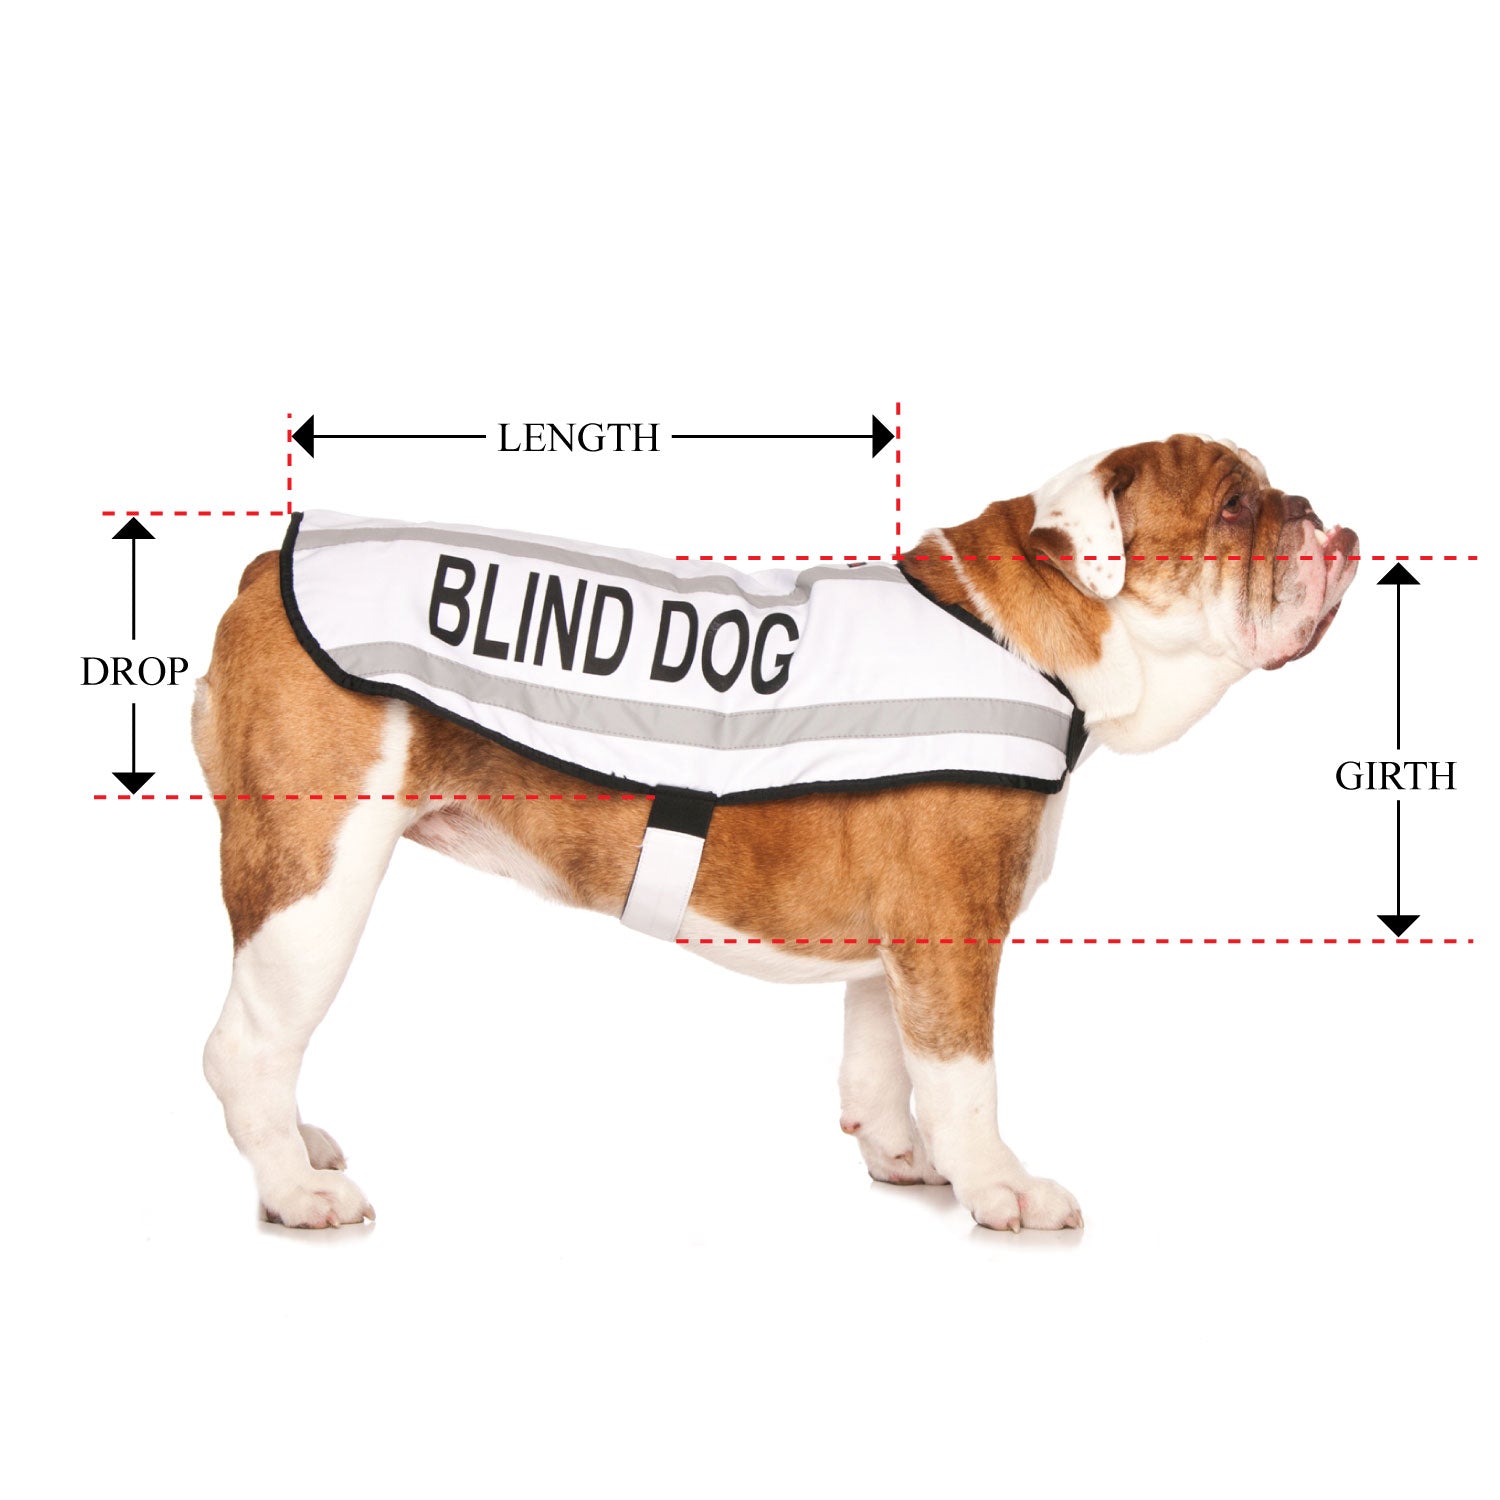 BLIND DOG - Medium Coat